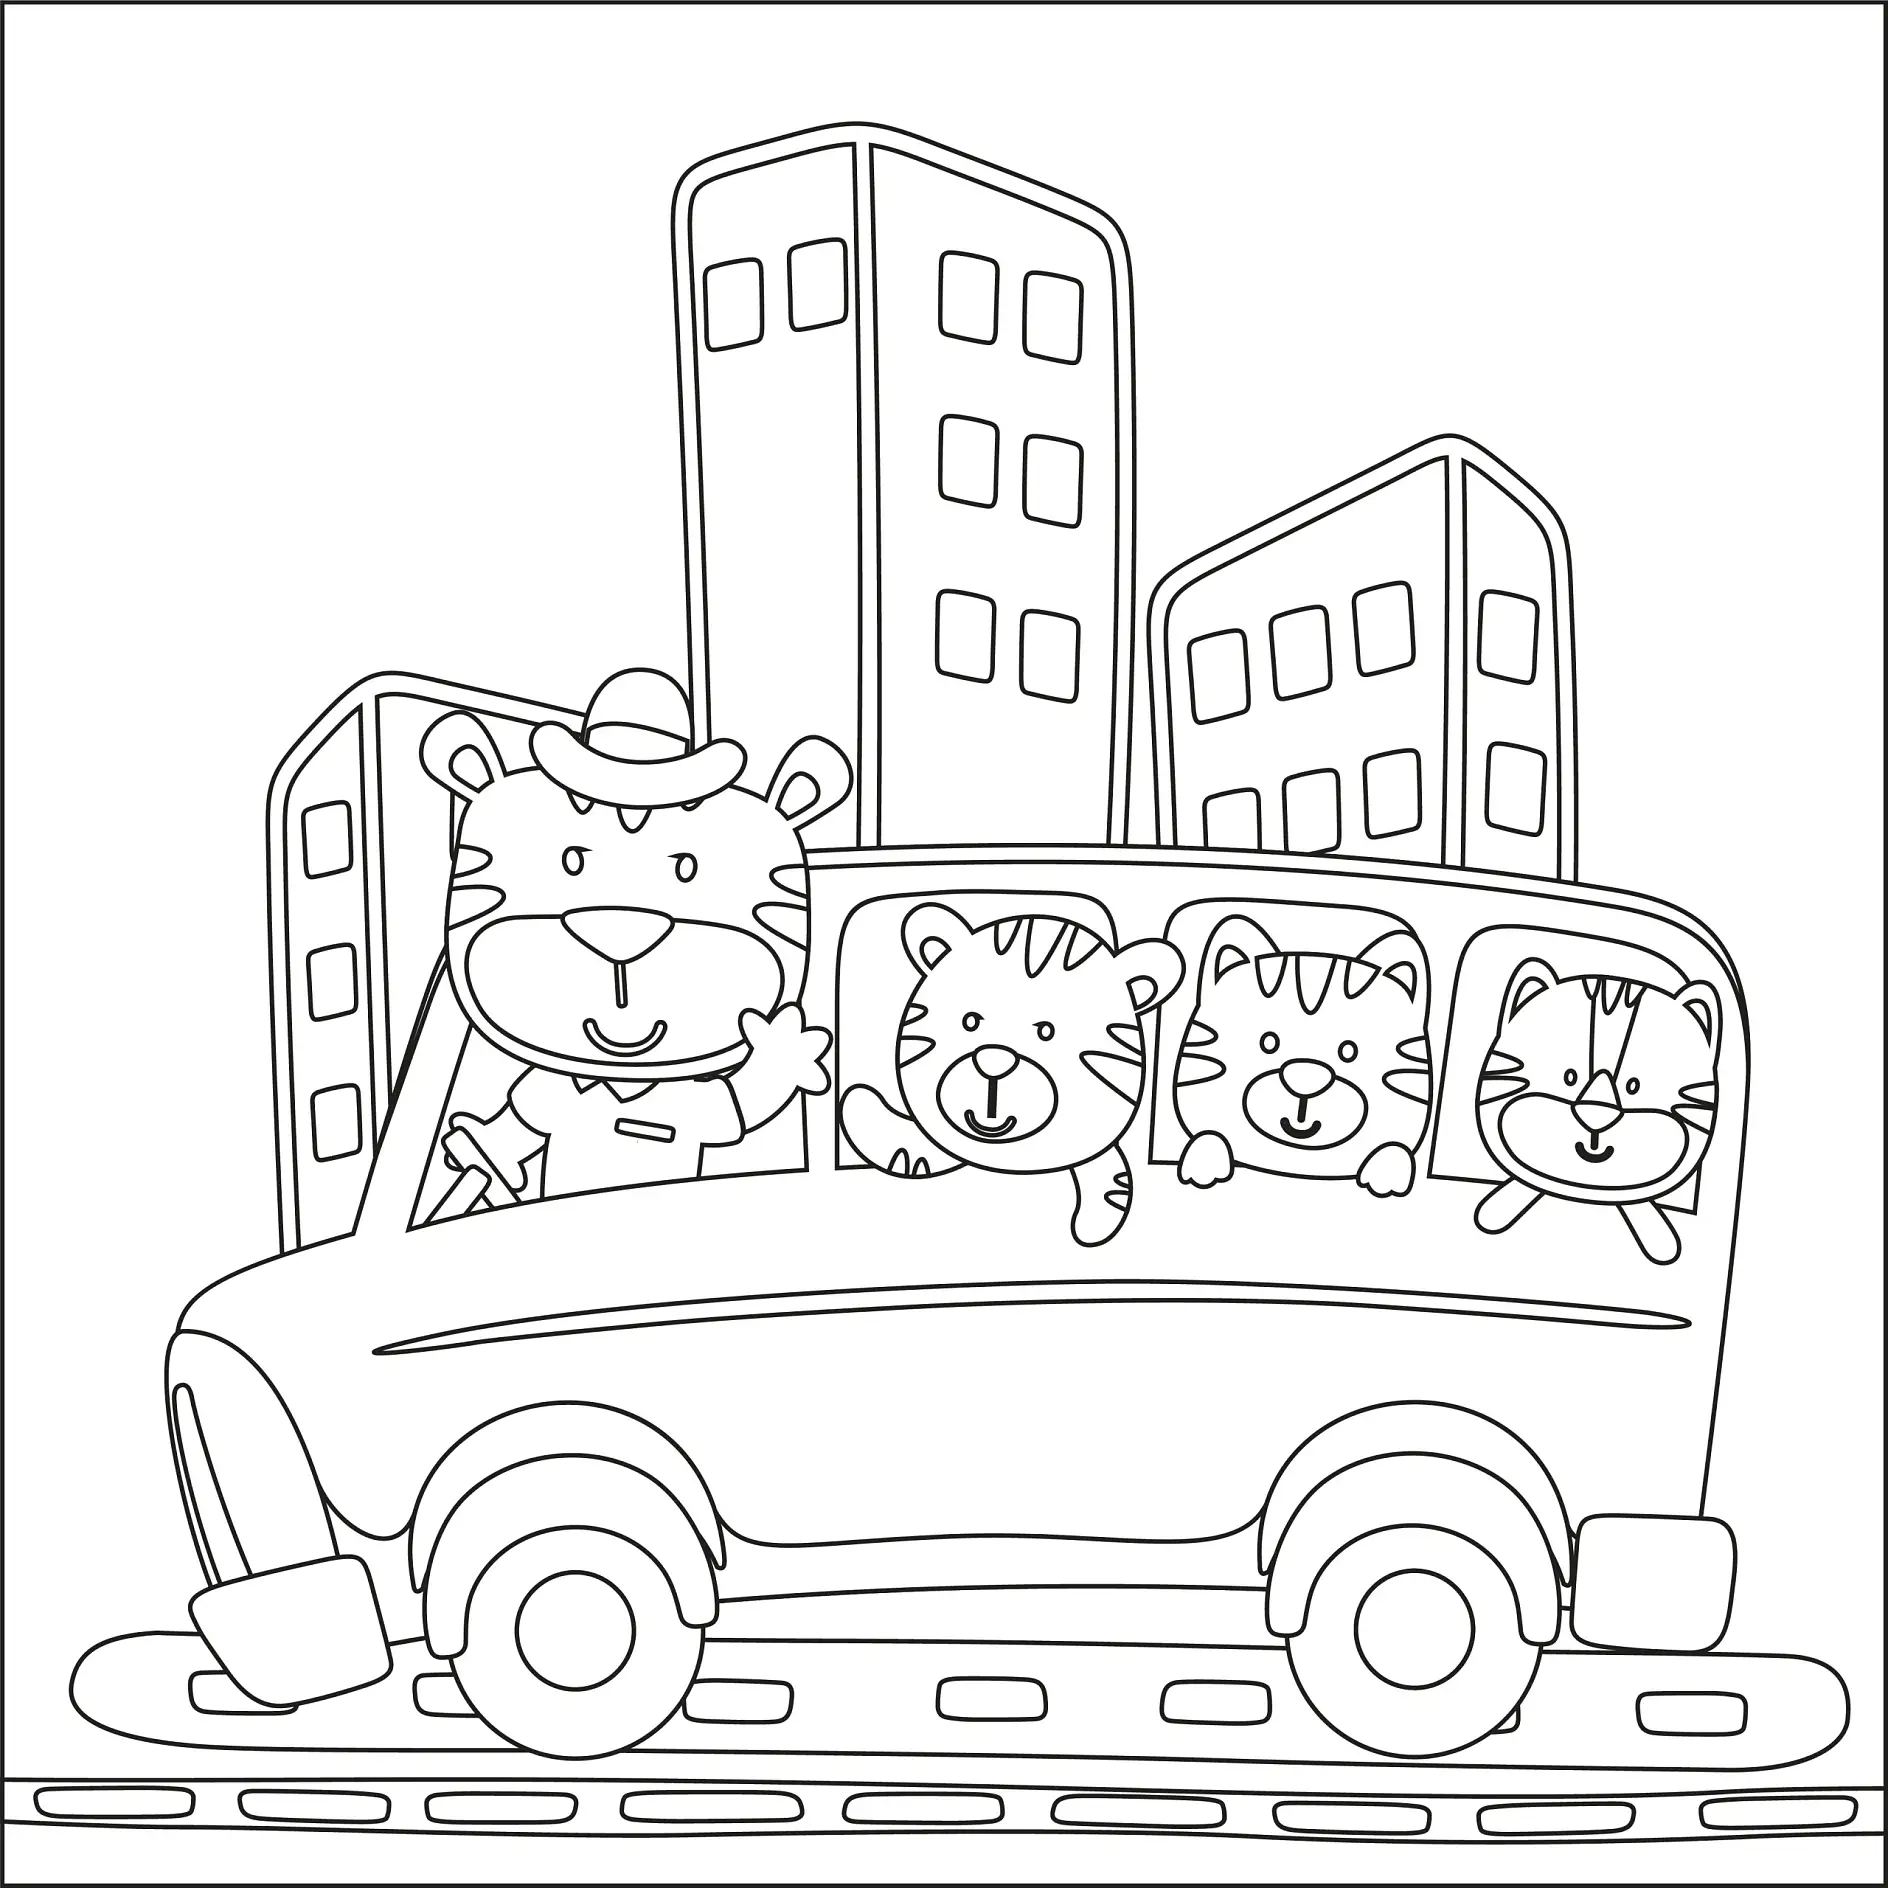 Ausmalbild Bus mit Tieren als Passagiere in der Stadt